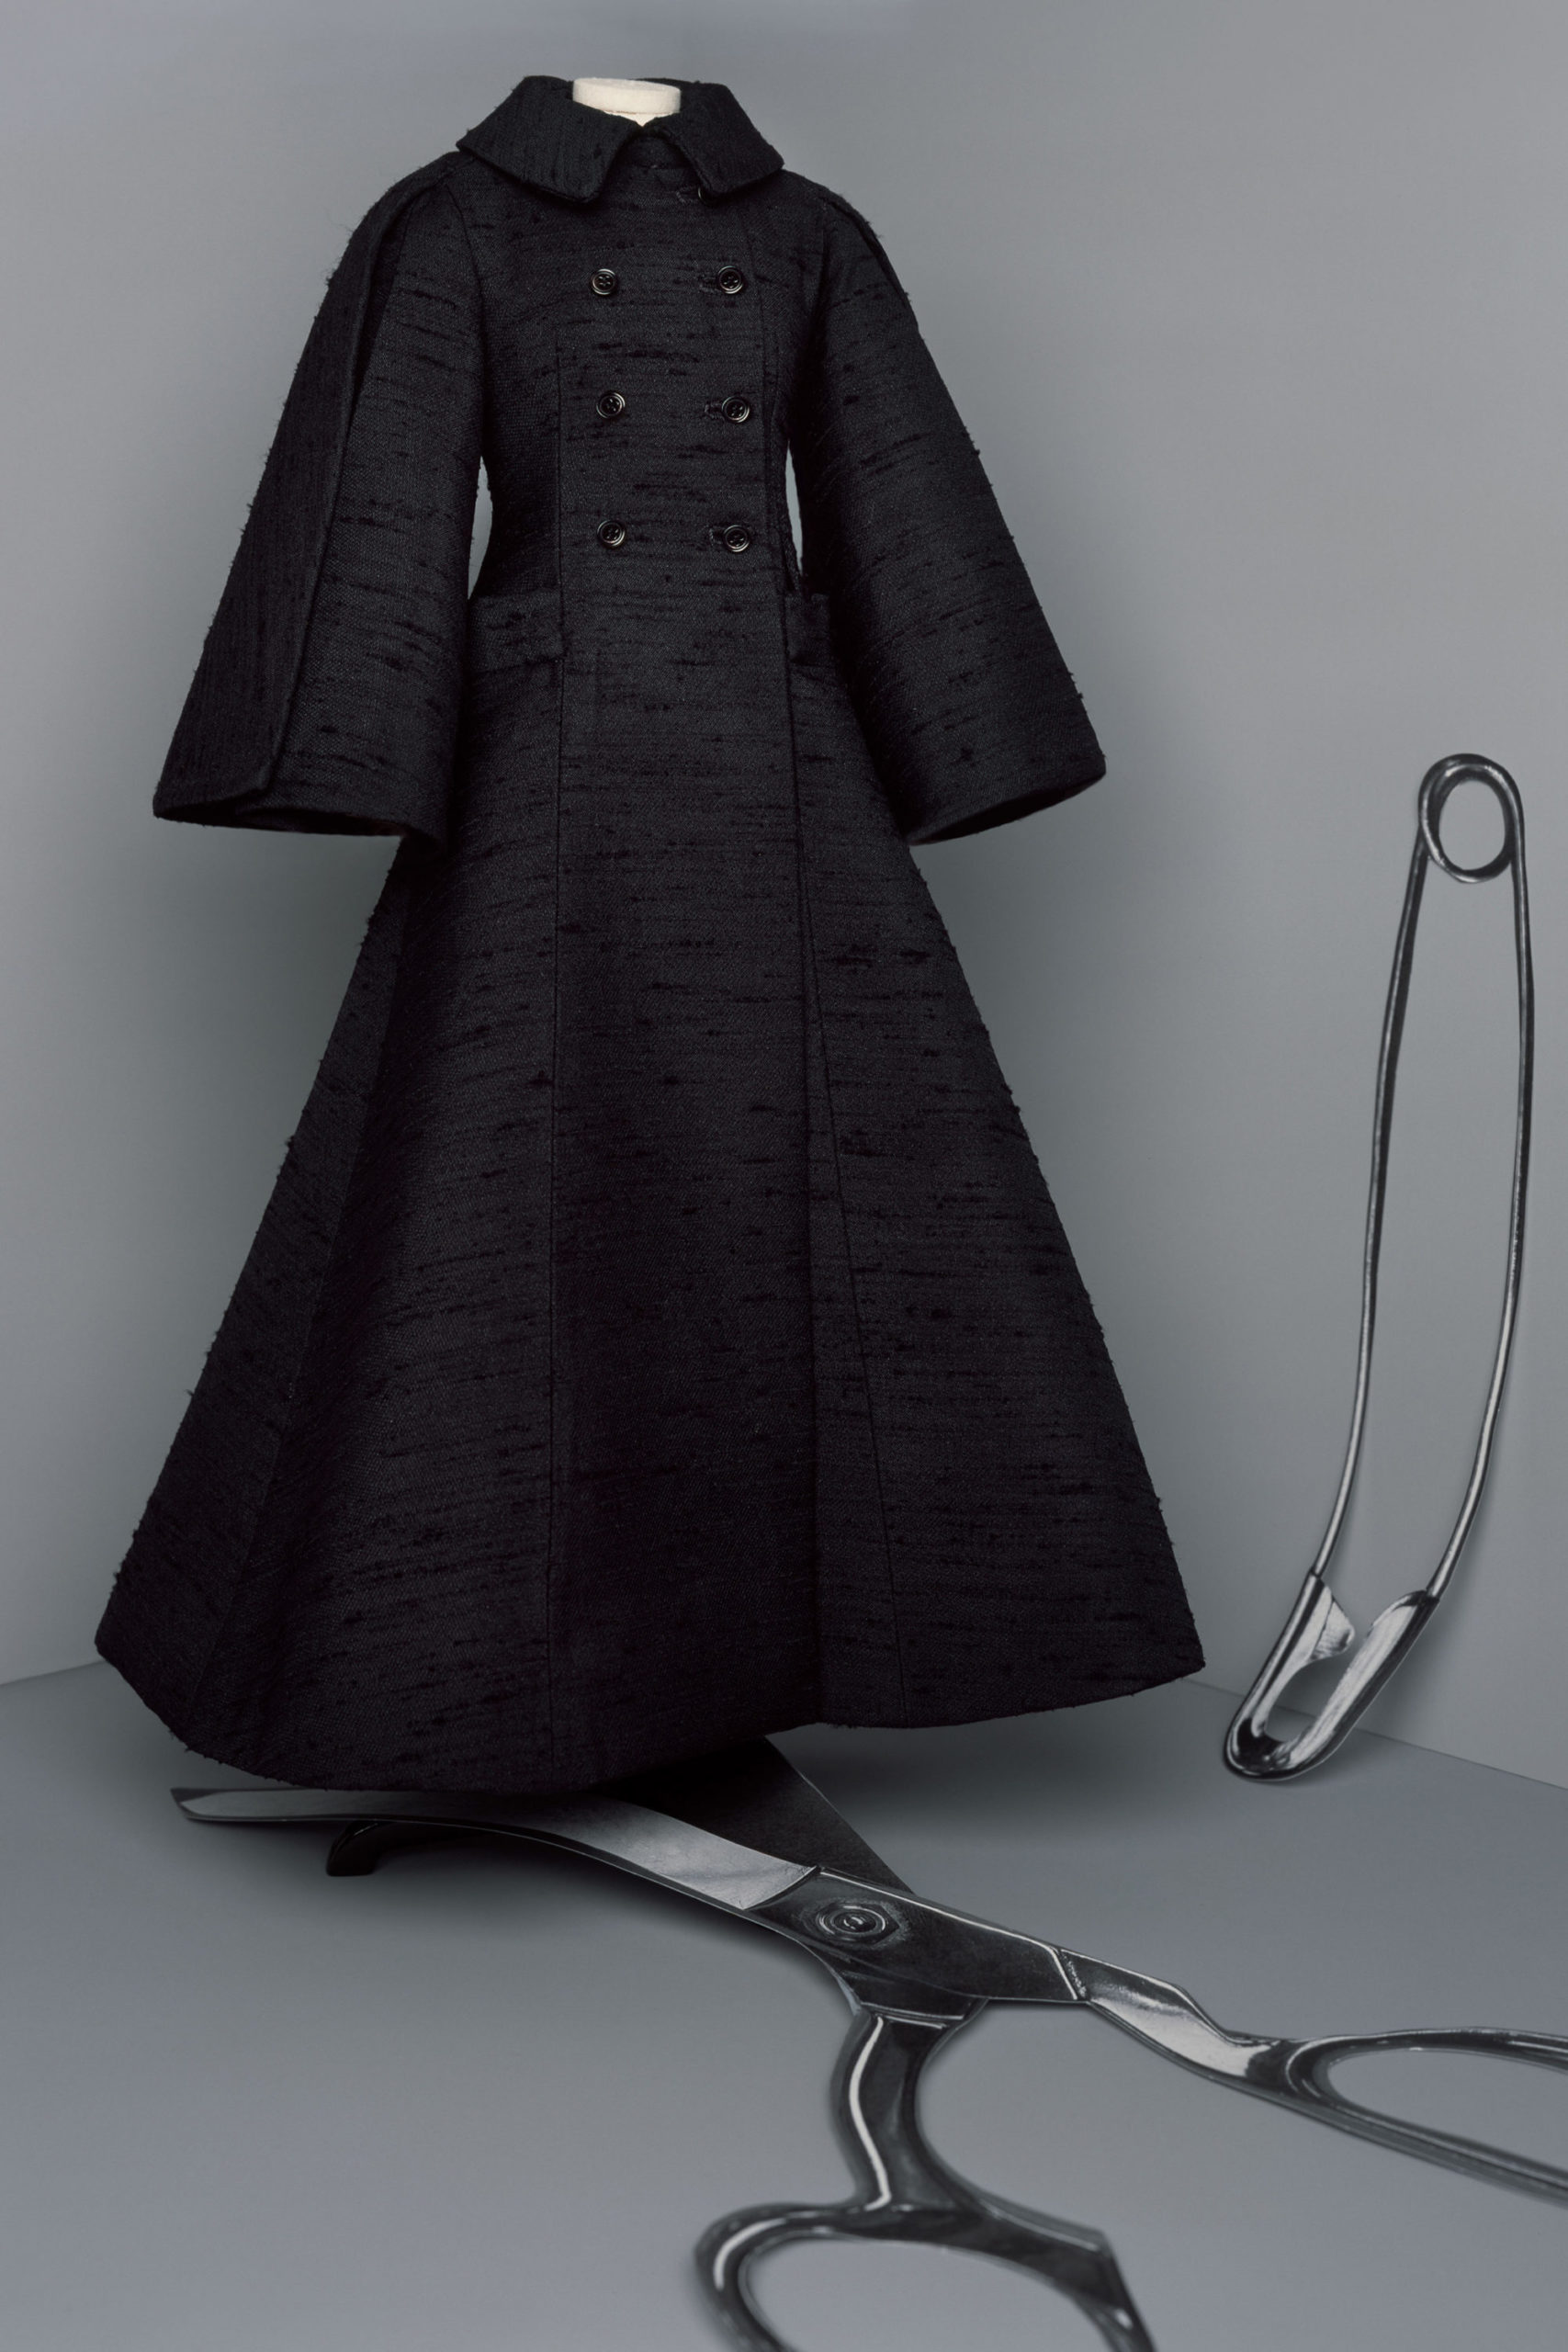 Платье с расклешёнными рукавами от Christian Dior кутюр модель 2021 года